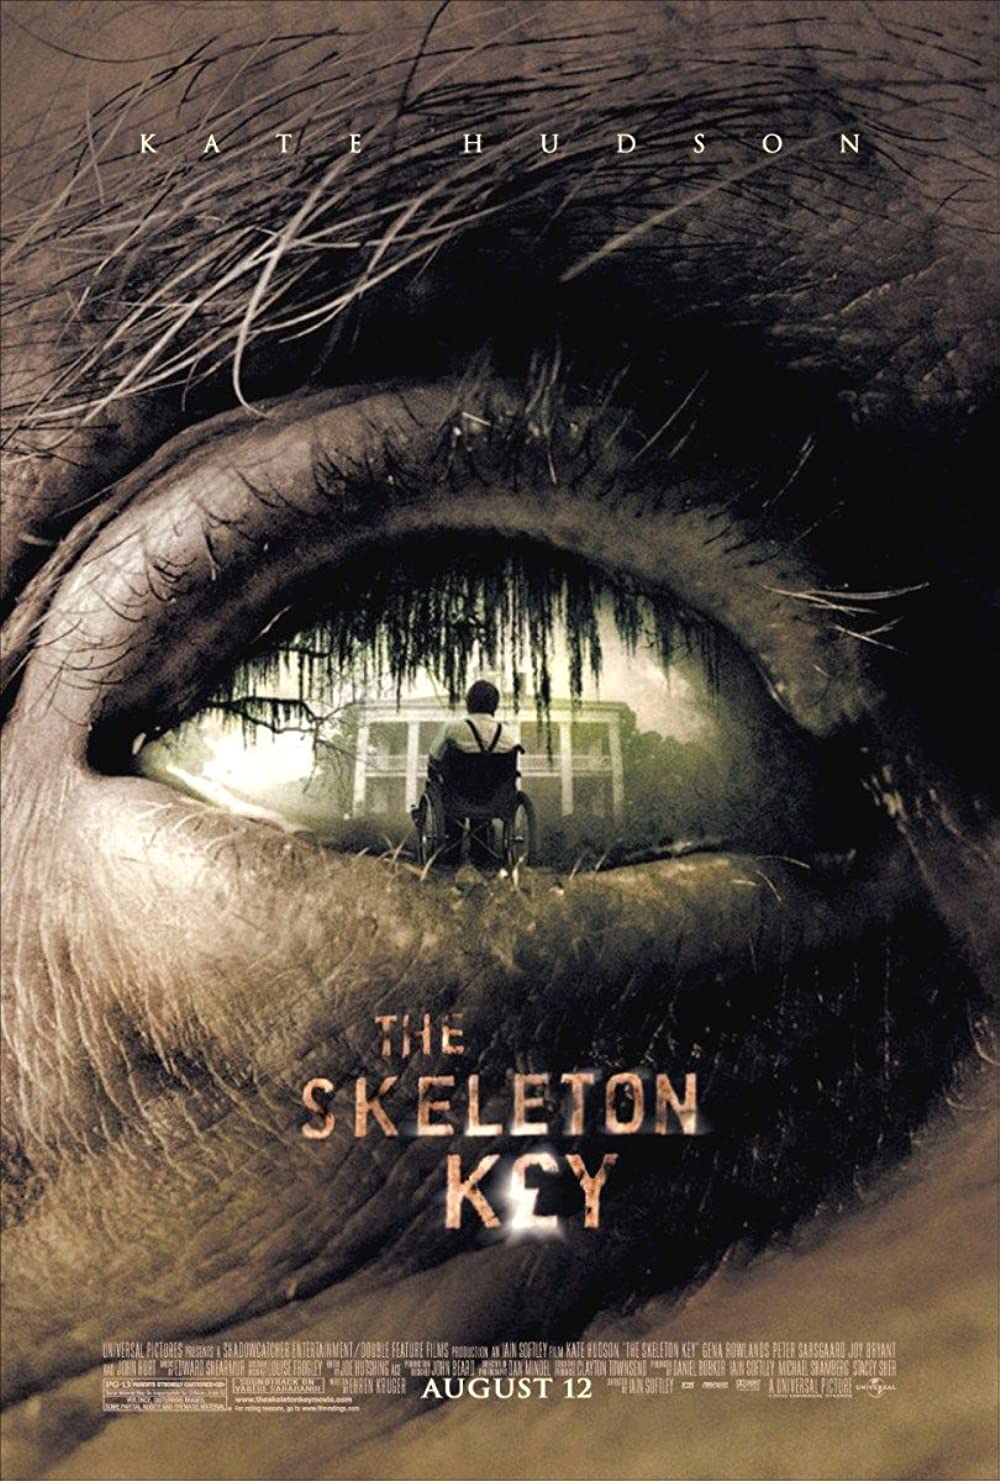 The Skeleton key (2005)